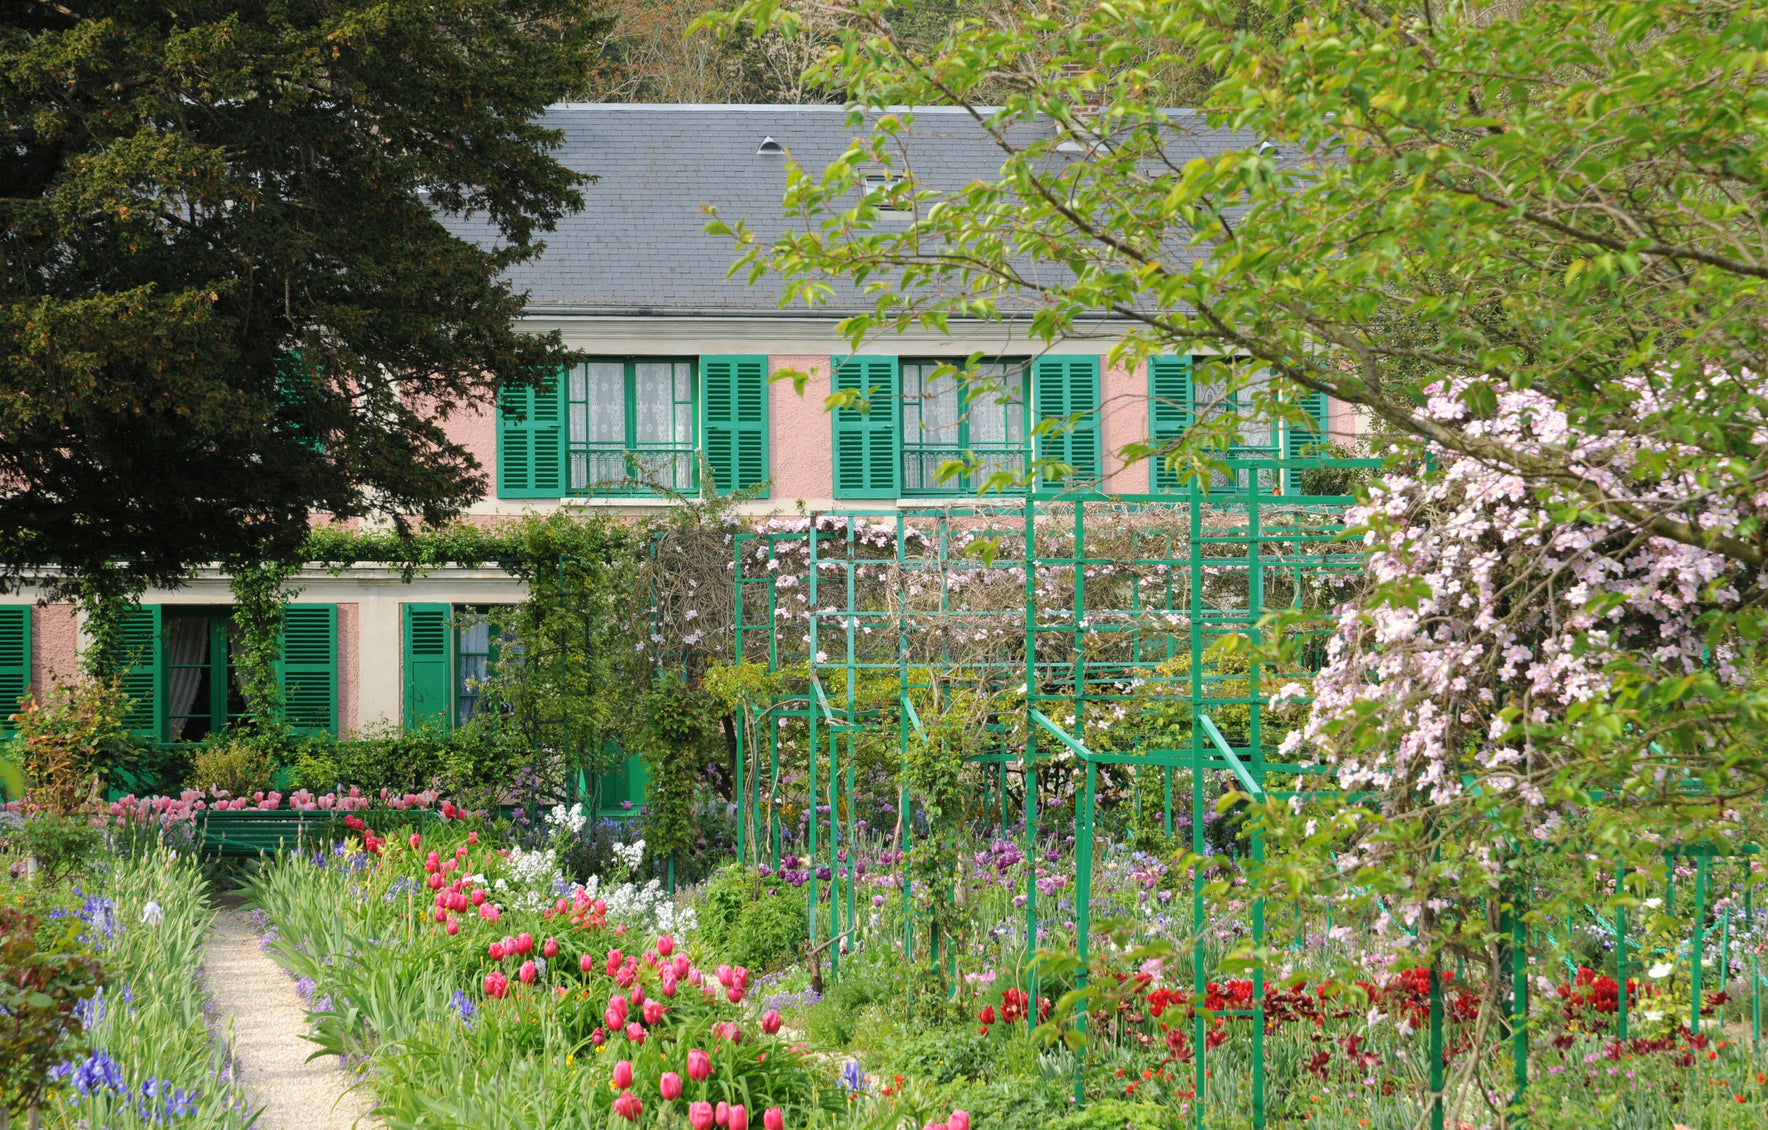 Les jardins remarquables d’Europe #3 : Les jardins de Claude Monet à Giverny